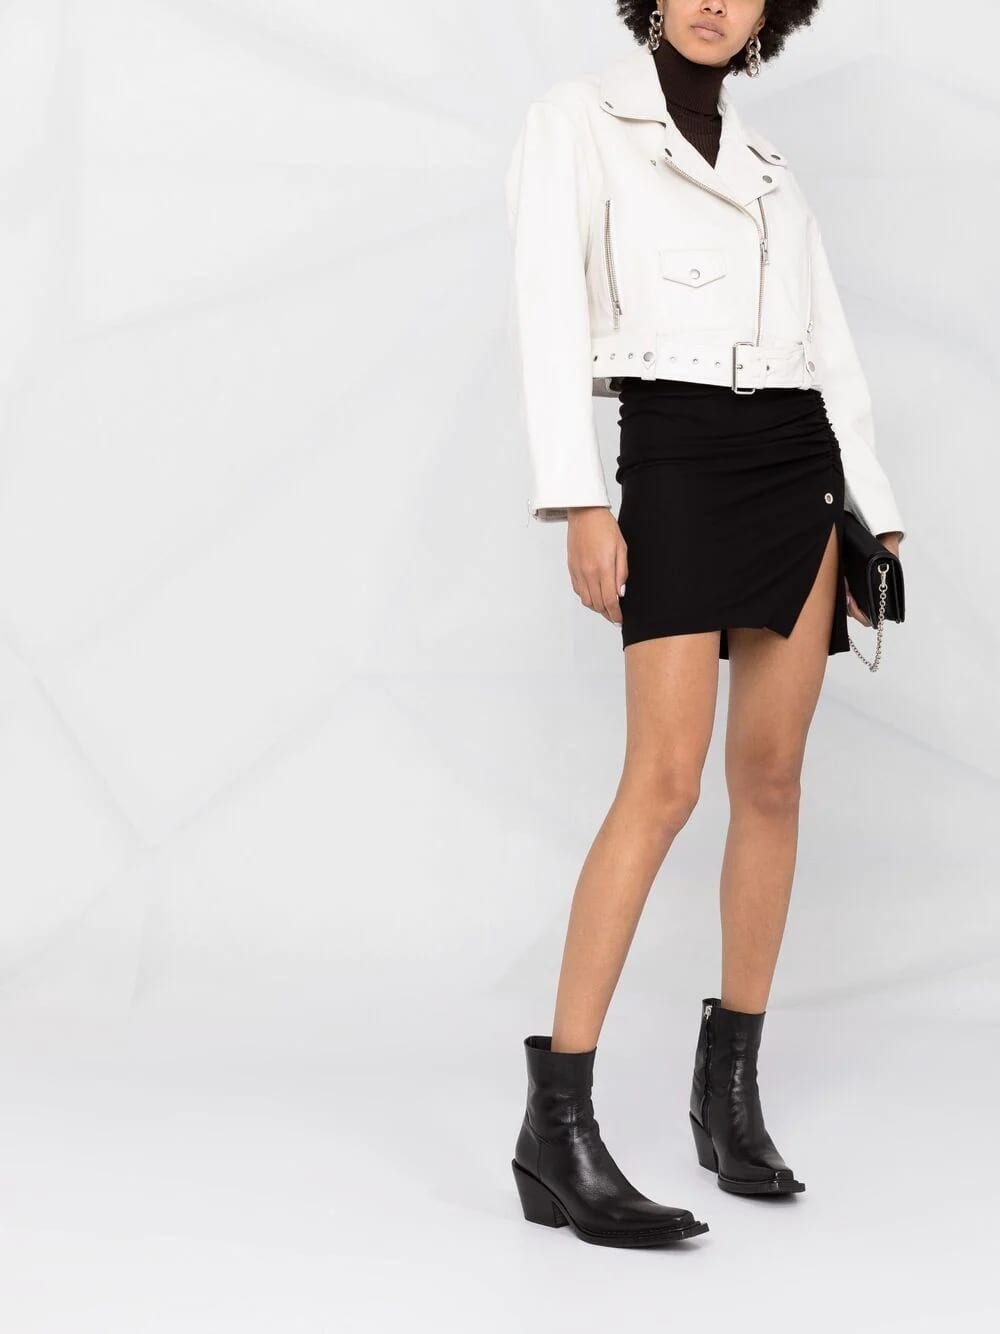 30 looks impactantes con chaqueta blanca para que estés siempre a la moda